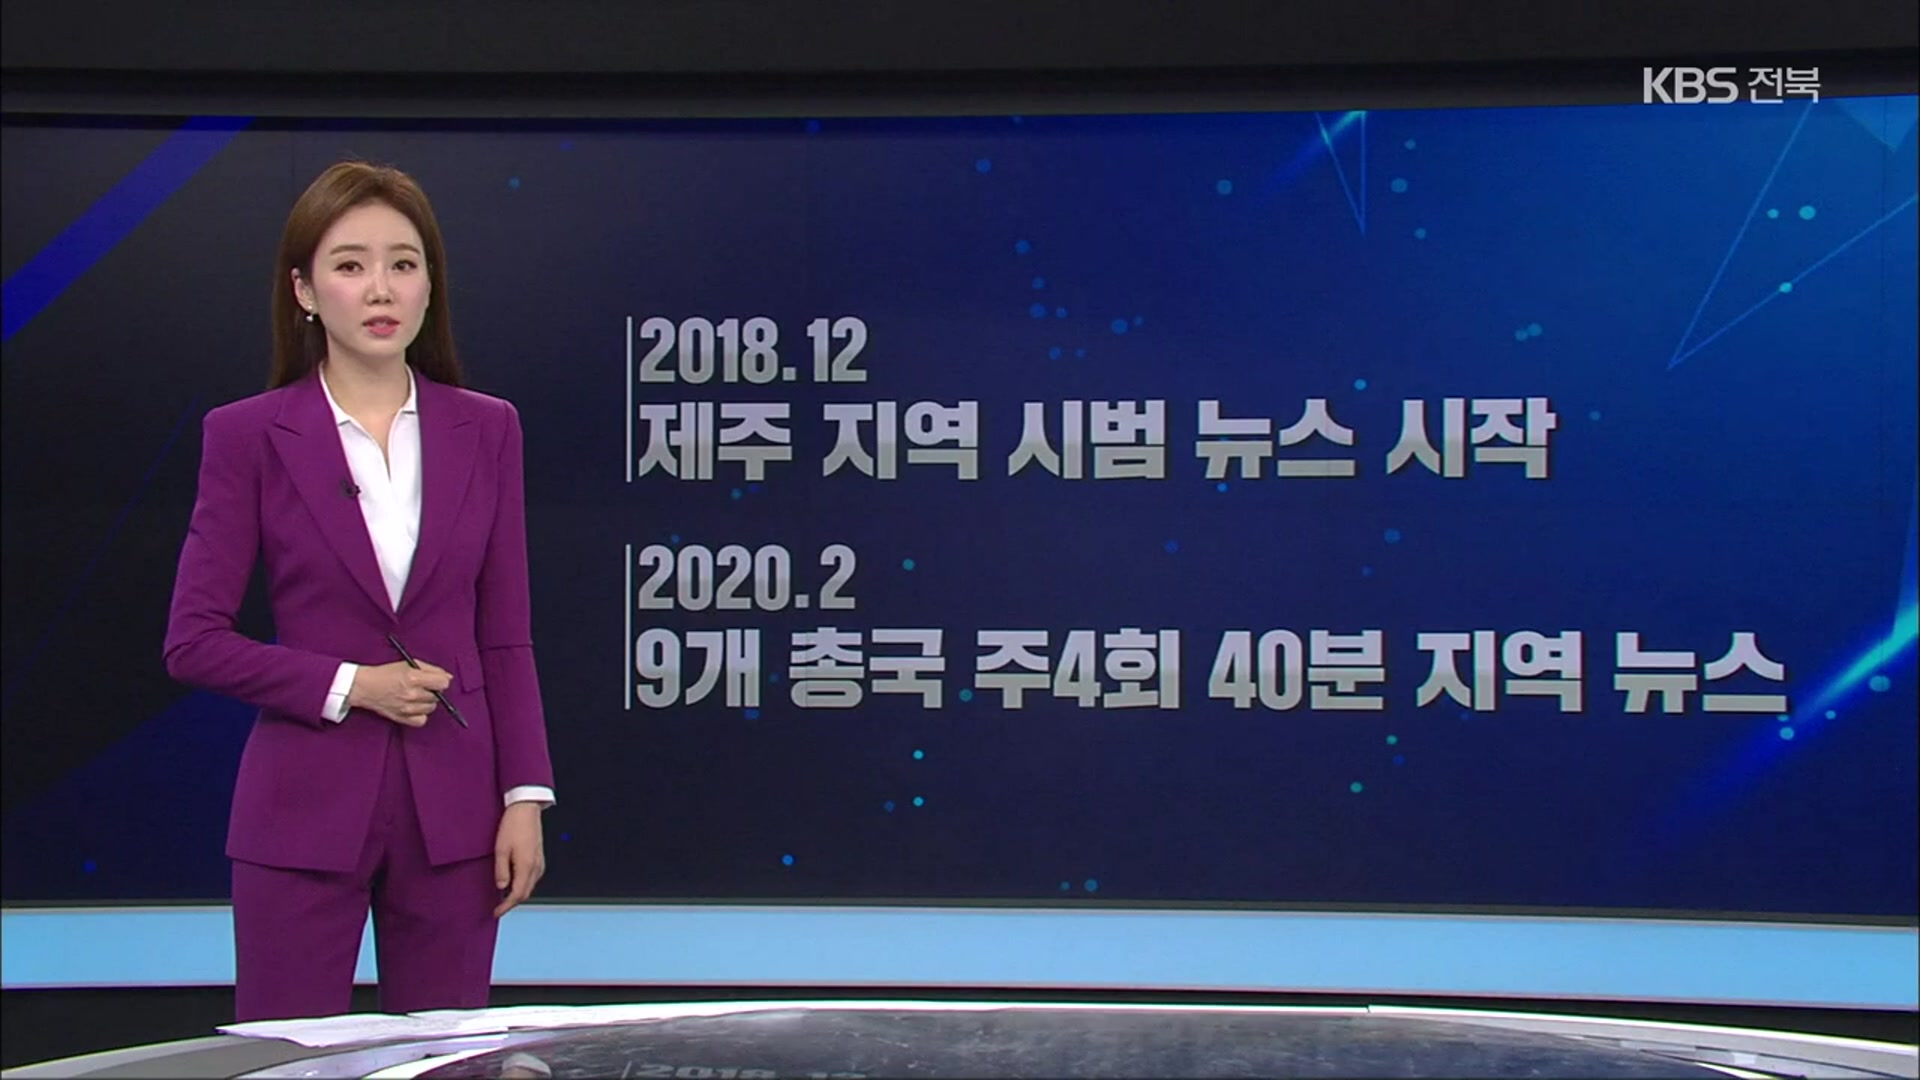 [뉴스7 지역화 1주년] 지역국 오늘 주요뉴스는?